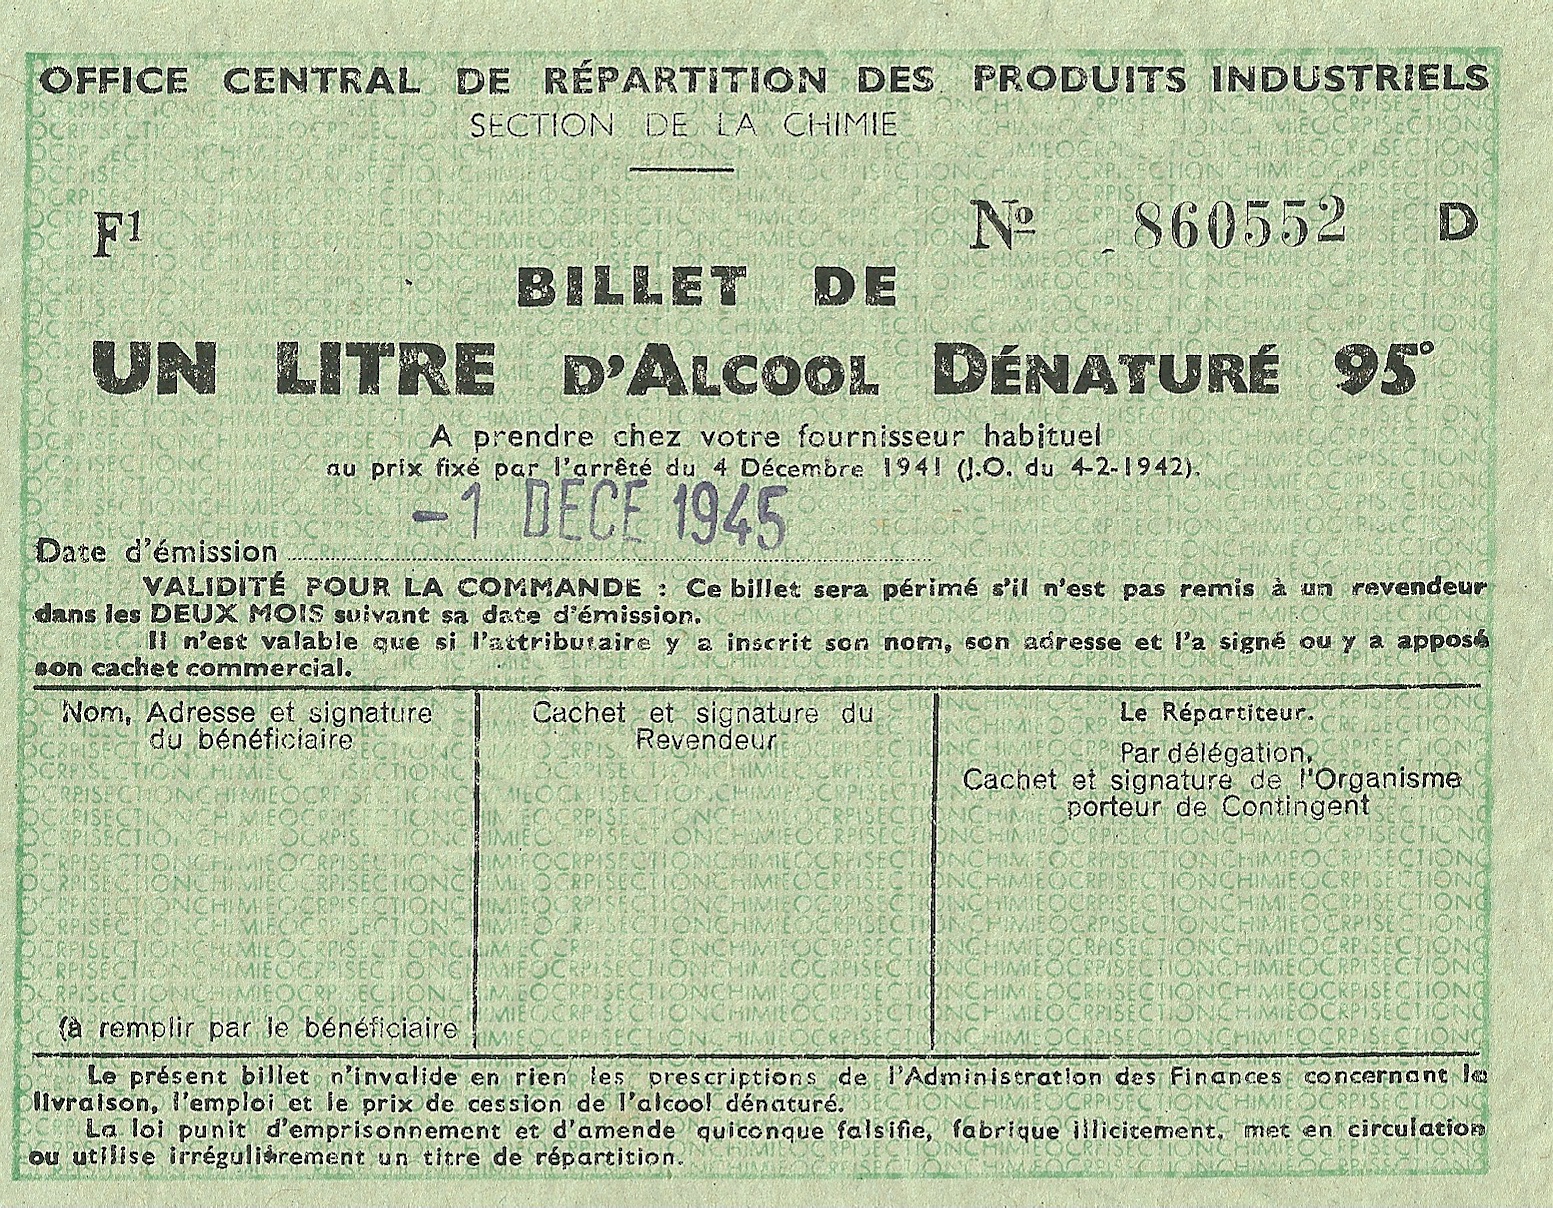 SECTION DE LA CHIMIE - BILLET DE UN LITRE D'ALCOOL DENATURE 95° - 860 552